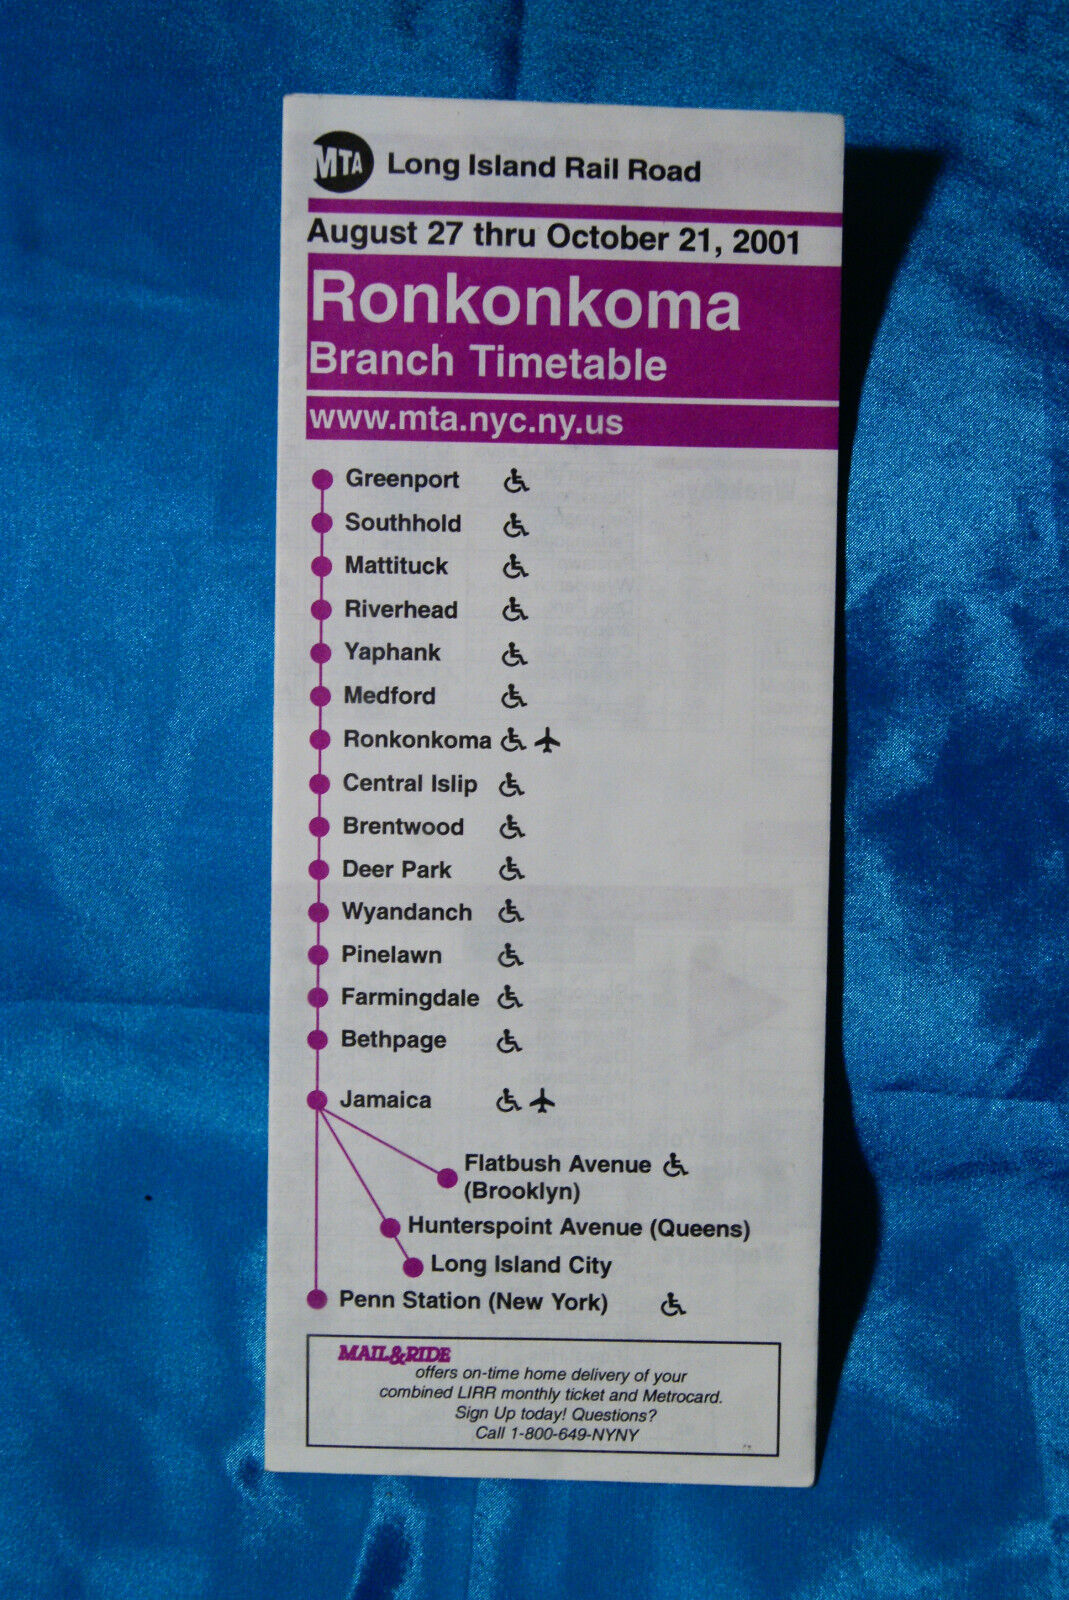 MTA - Long Island Railroad - Ronkonkoma - Aug 27 thru Oct 21, 2001